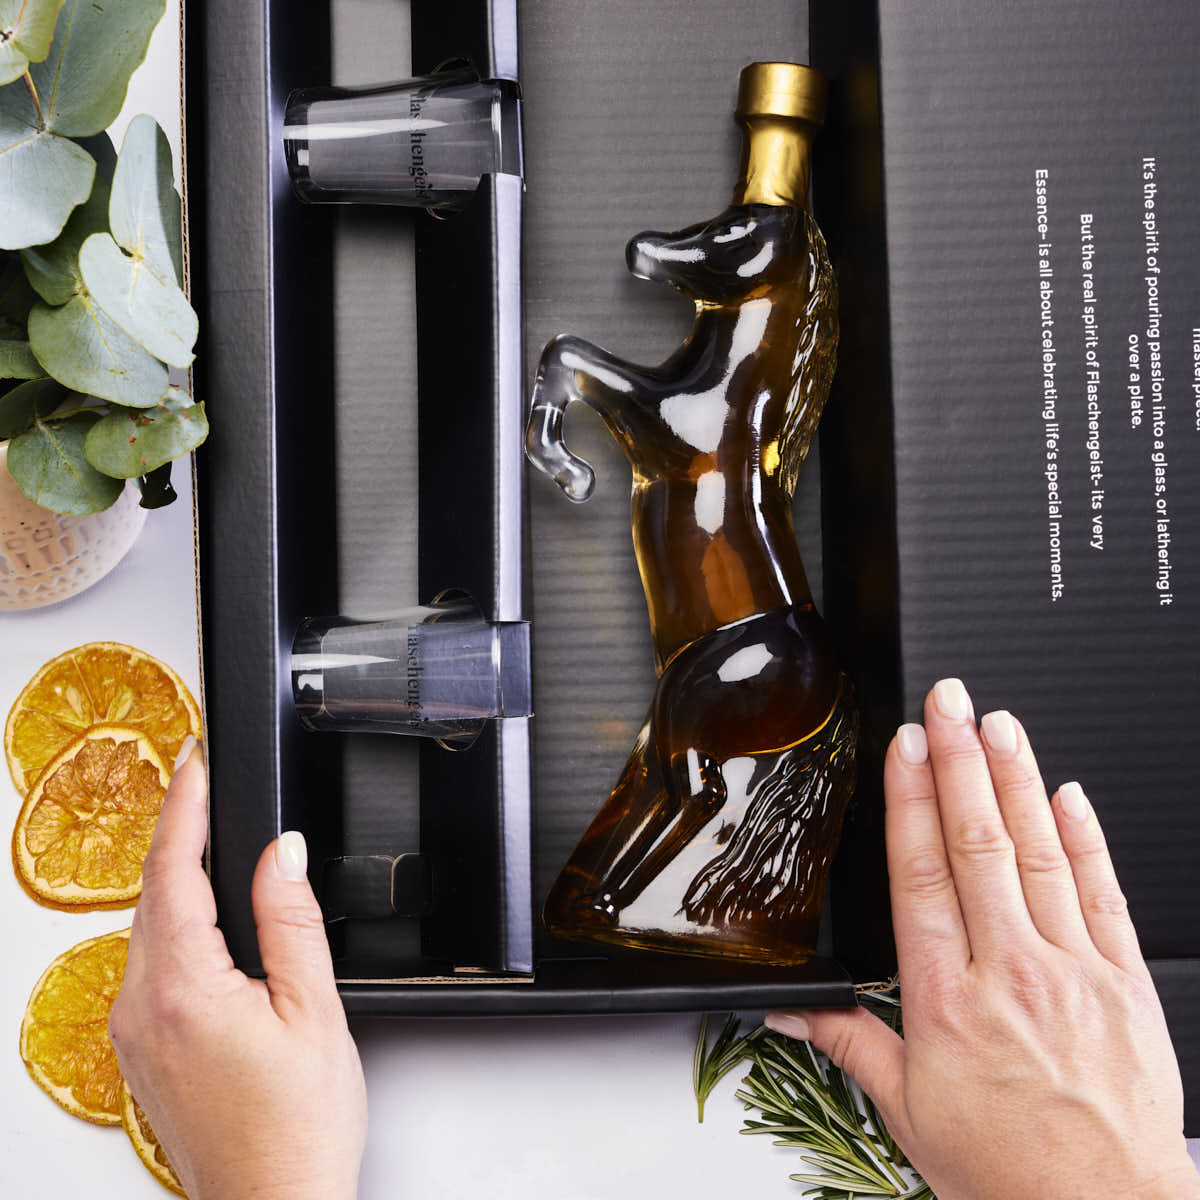 Horse Bottle - Bundaberg Rum - Gift Box - Flaschengeist (Aust) Pty Ltd